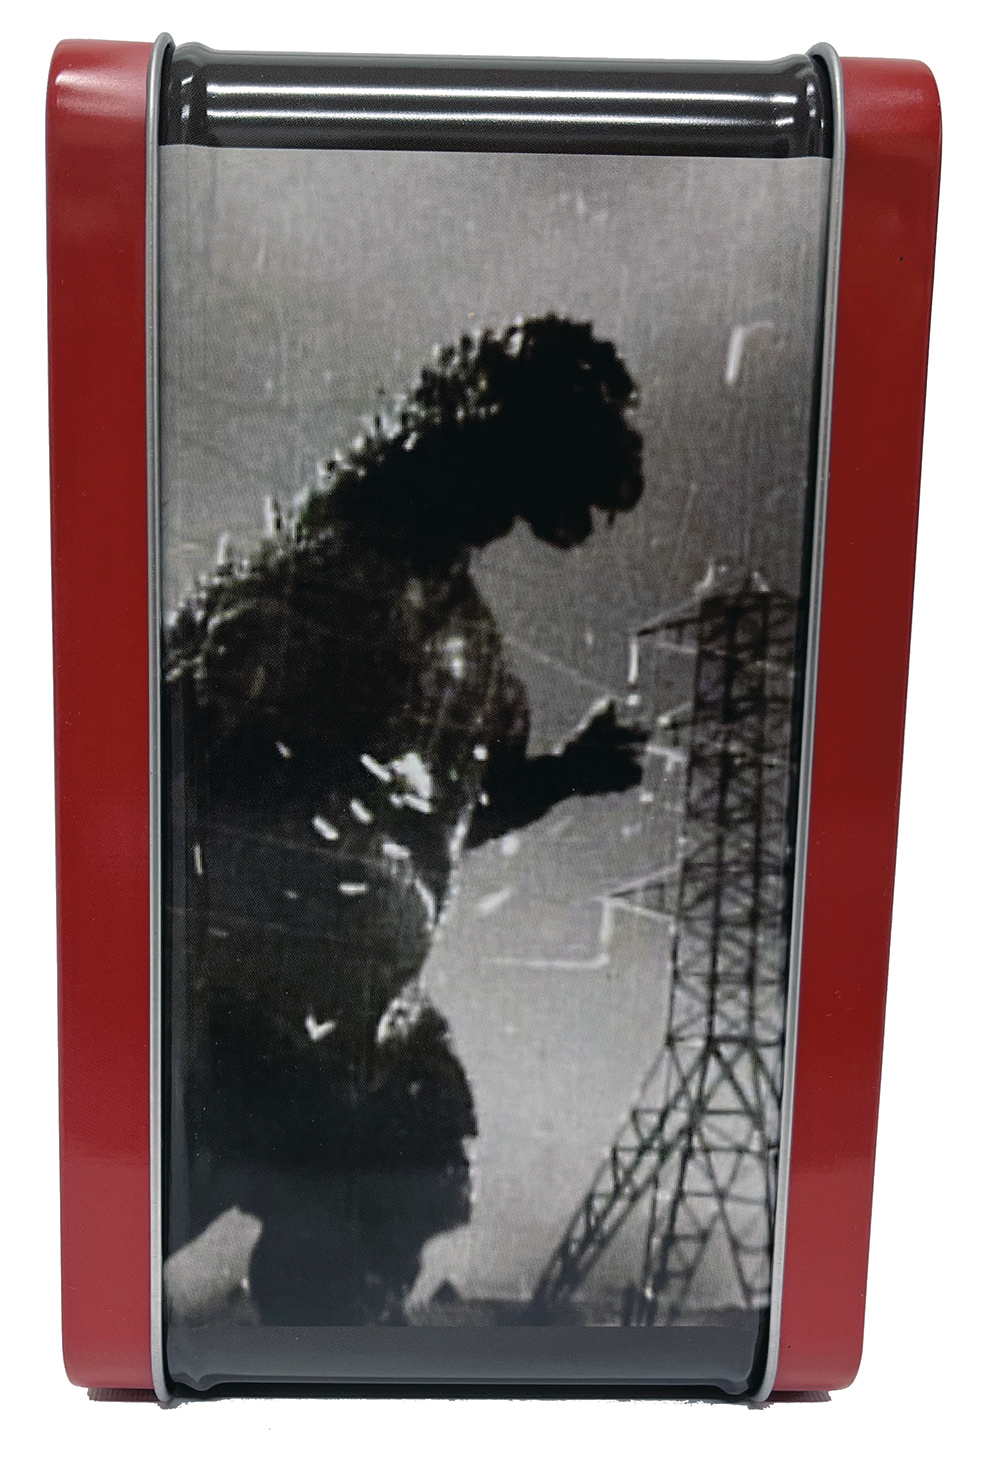 Lancheiras Godzilla 1954 e Godzilla vs. Mechagodzilla II 1993